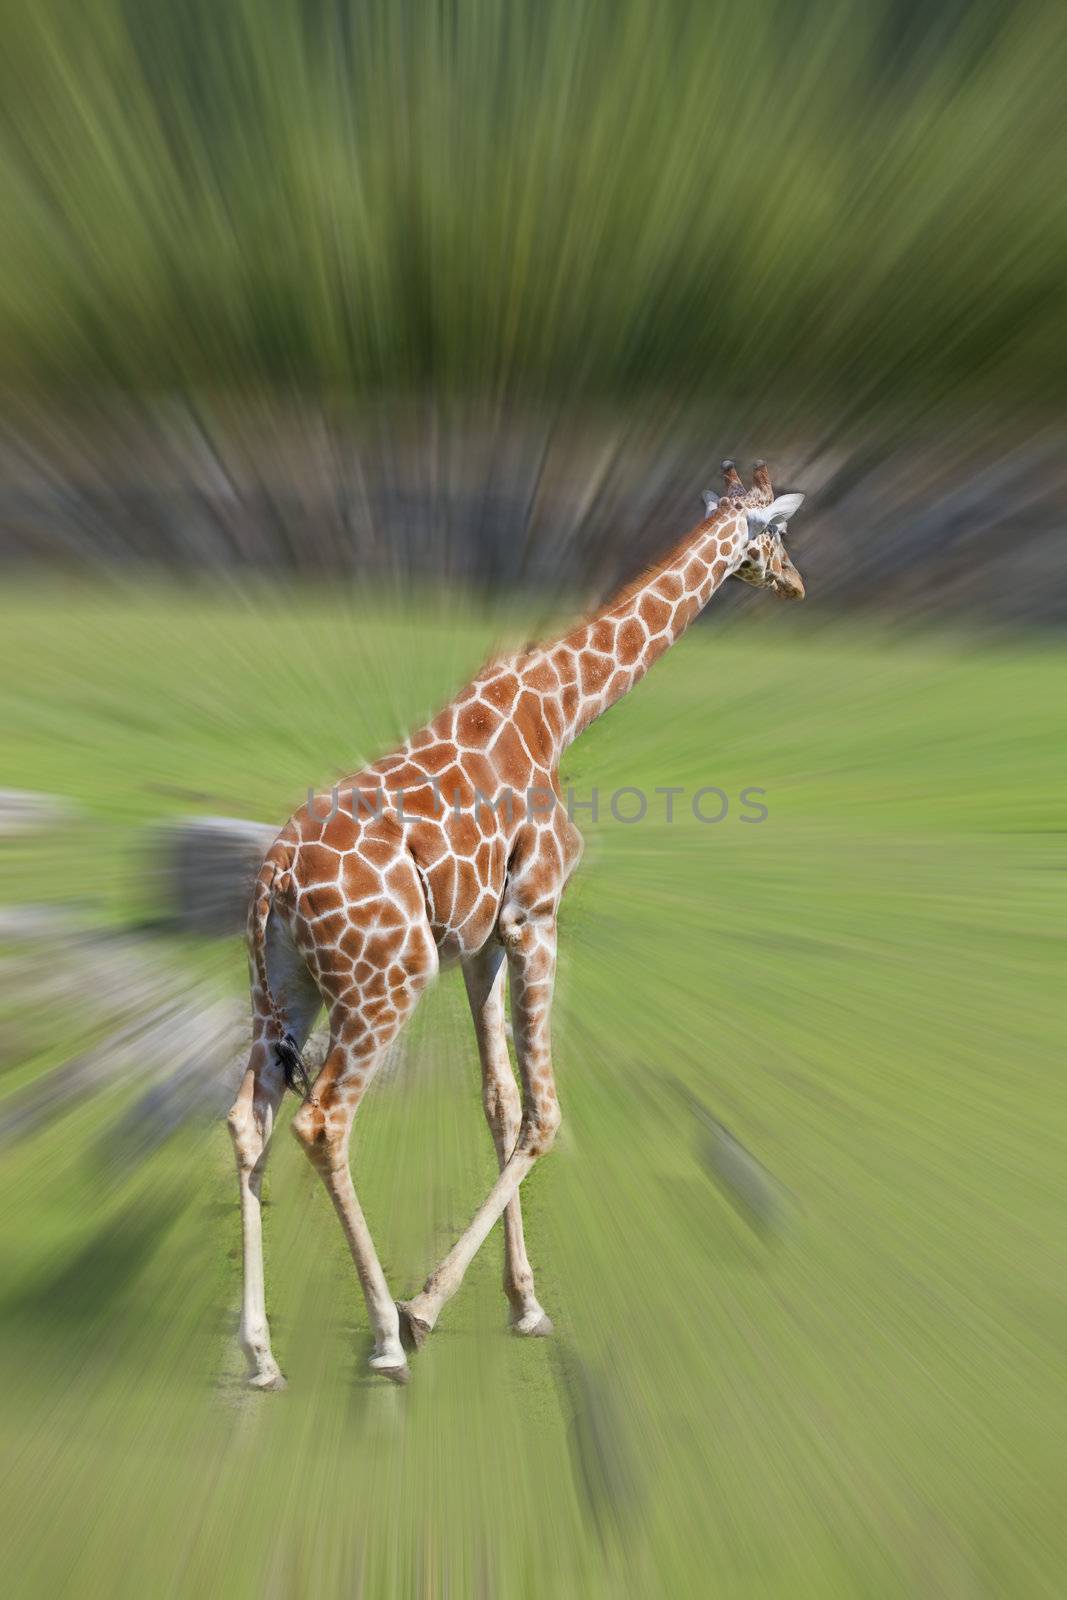 A running giraffe